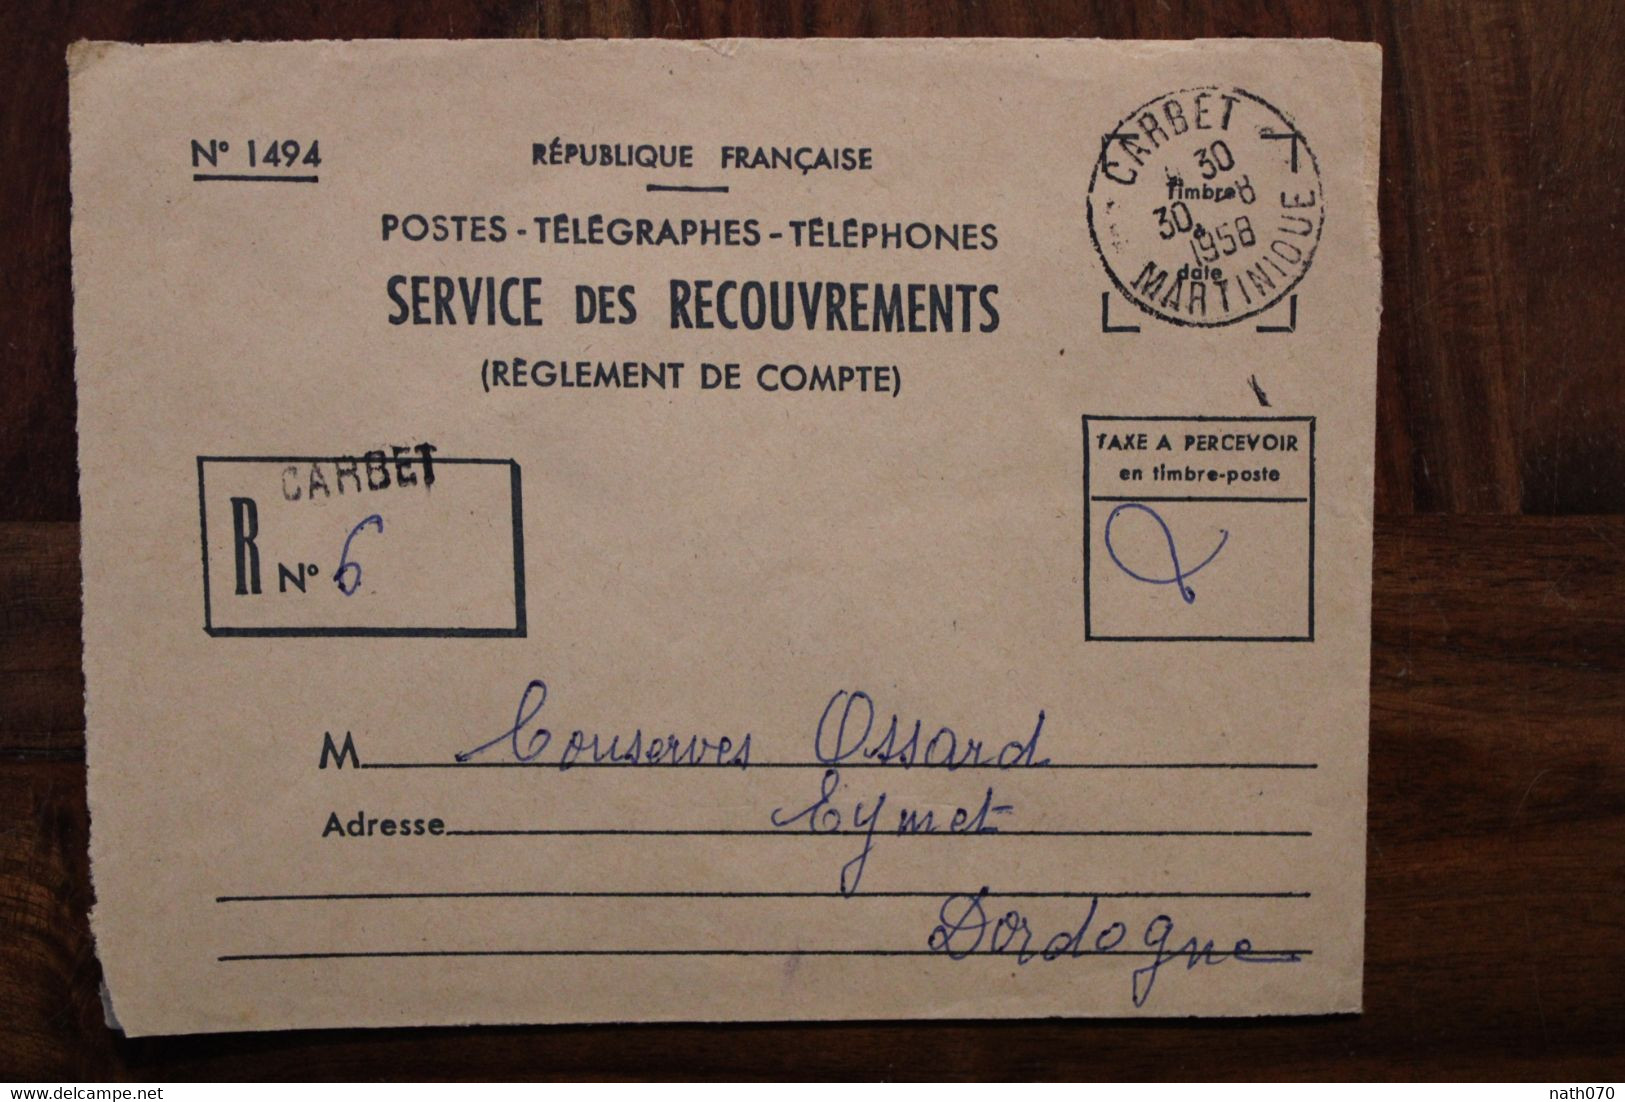 Martinique 1958 Carbet Cover Enveloppe PTT Recouvrement France Oblit. Mécanique Taxe Recommandé - Covers & Documents